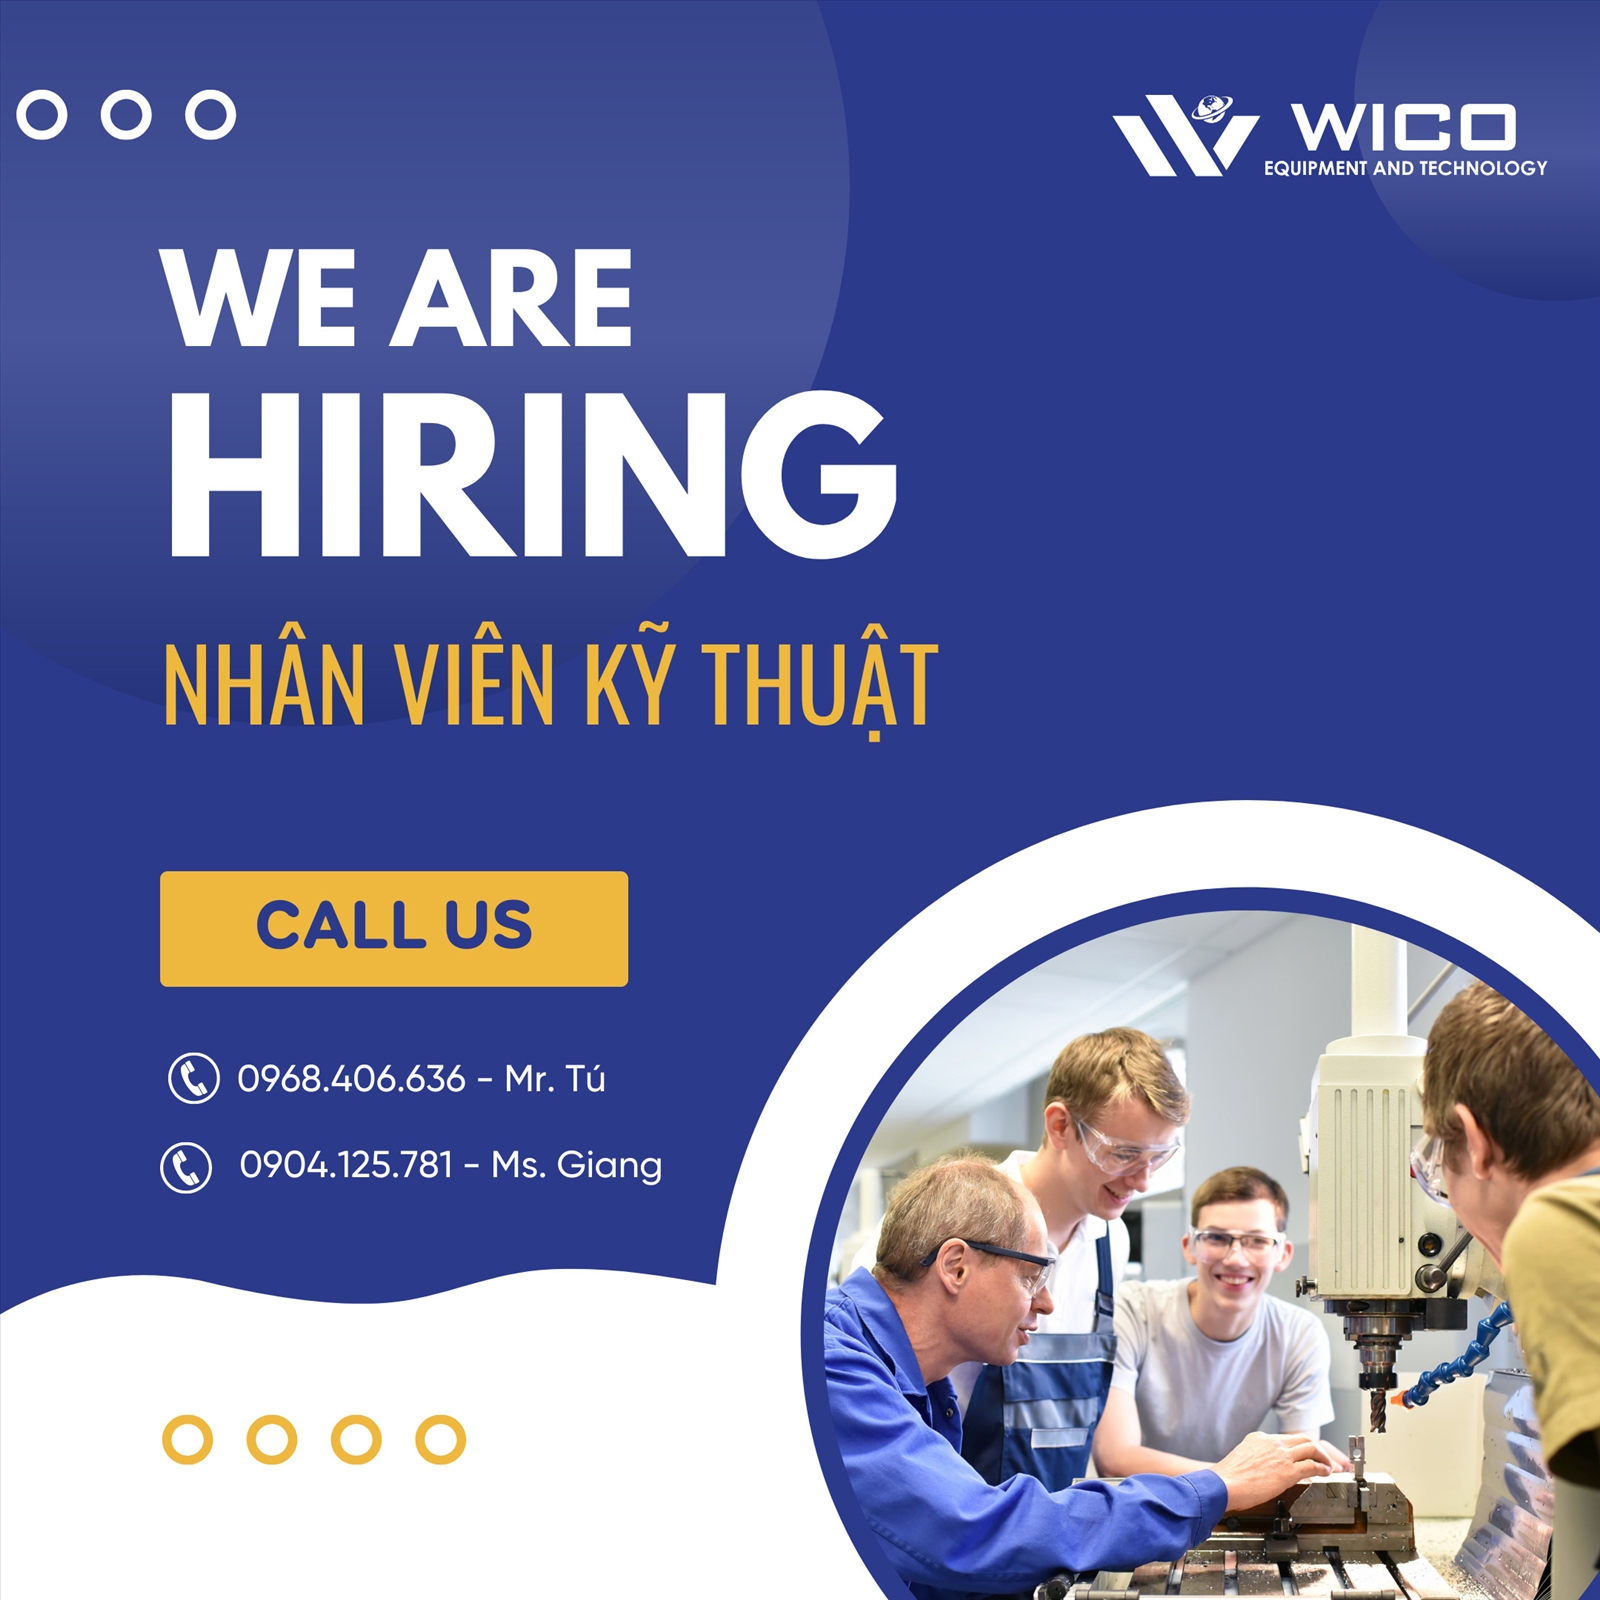 WICO - Tuyển dụng nhân viên kỹ thuật 06-2022